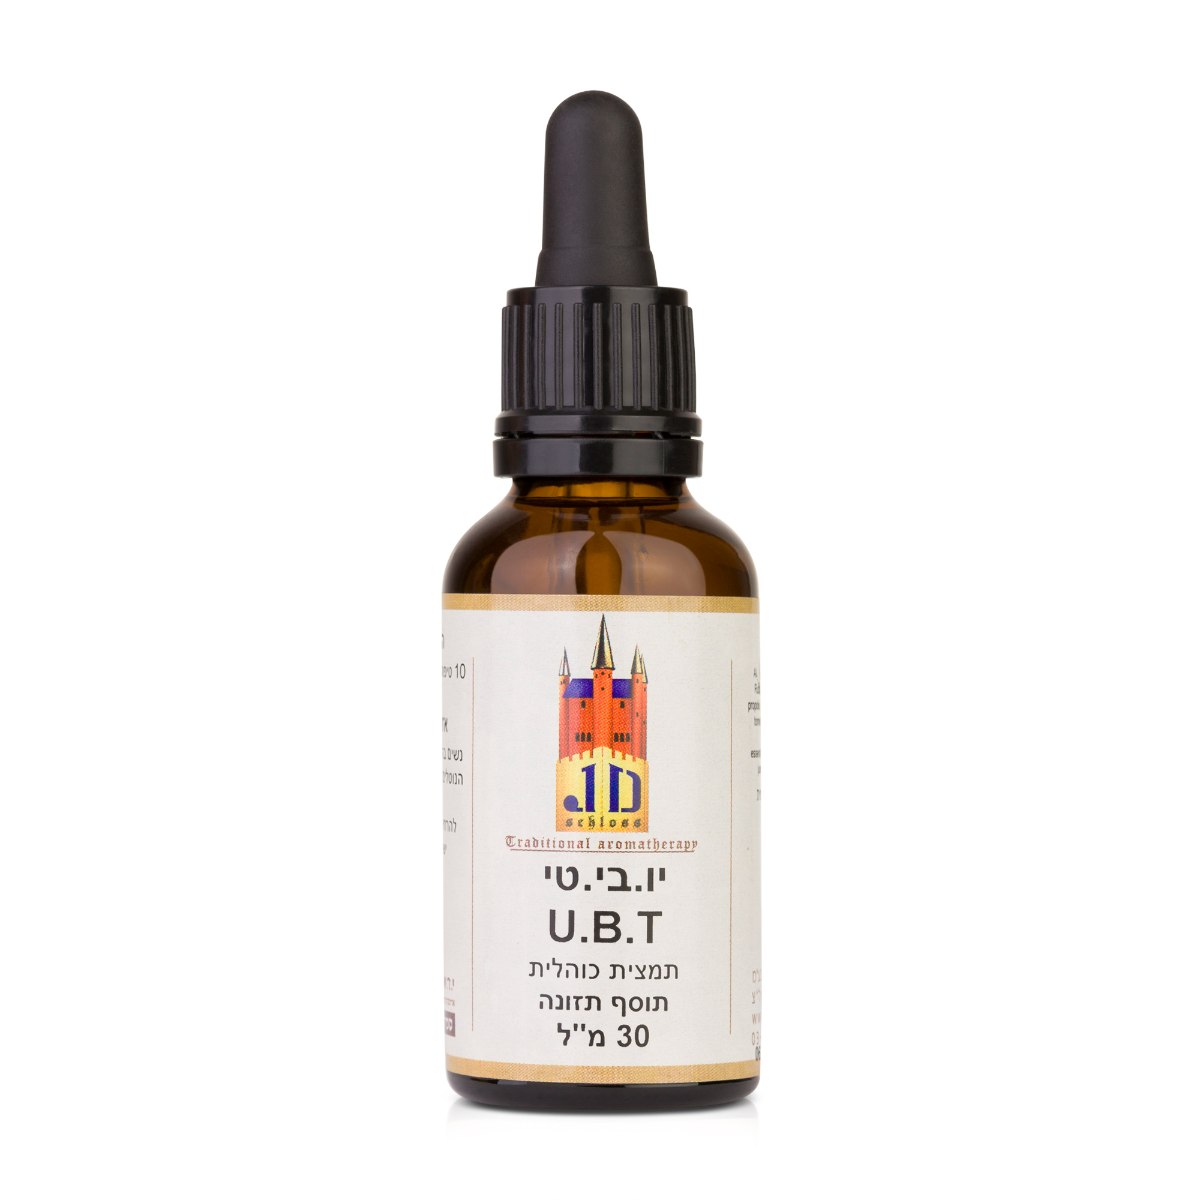 UBT - תערובת צמחים לטיפול בדלקת בשתן